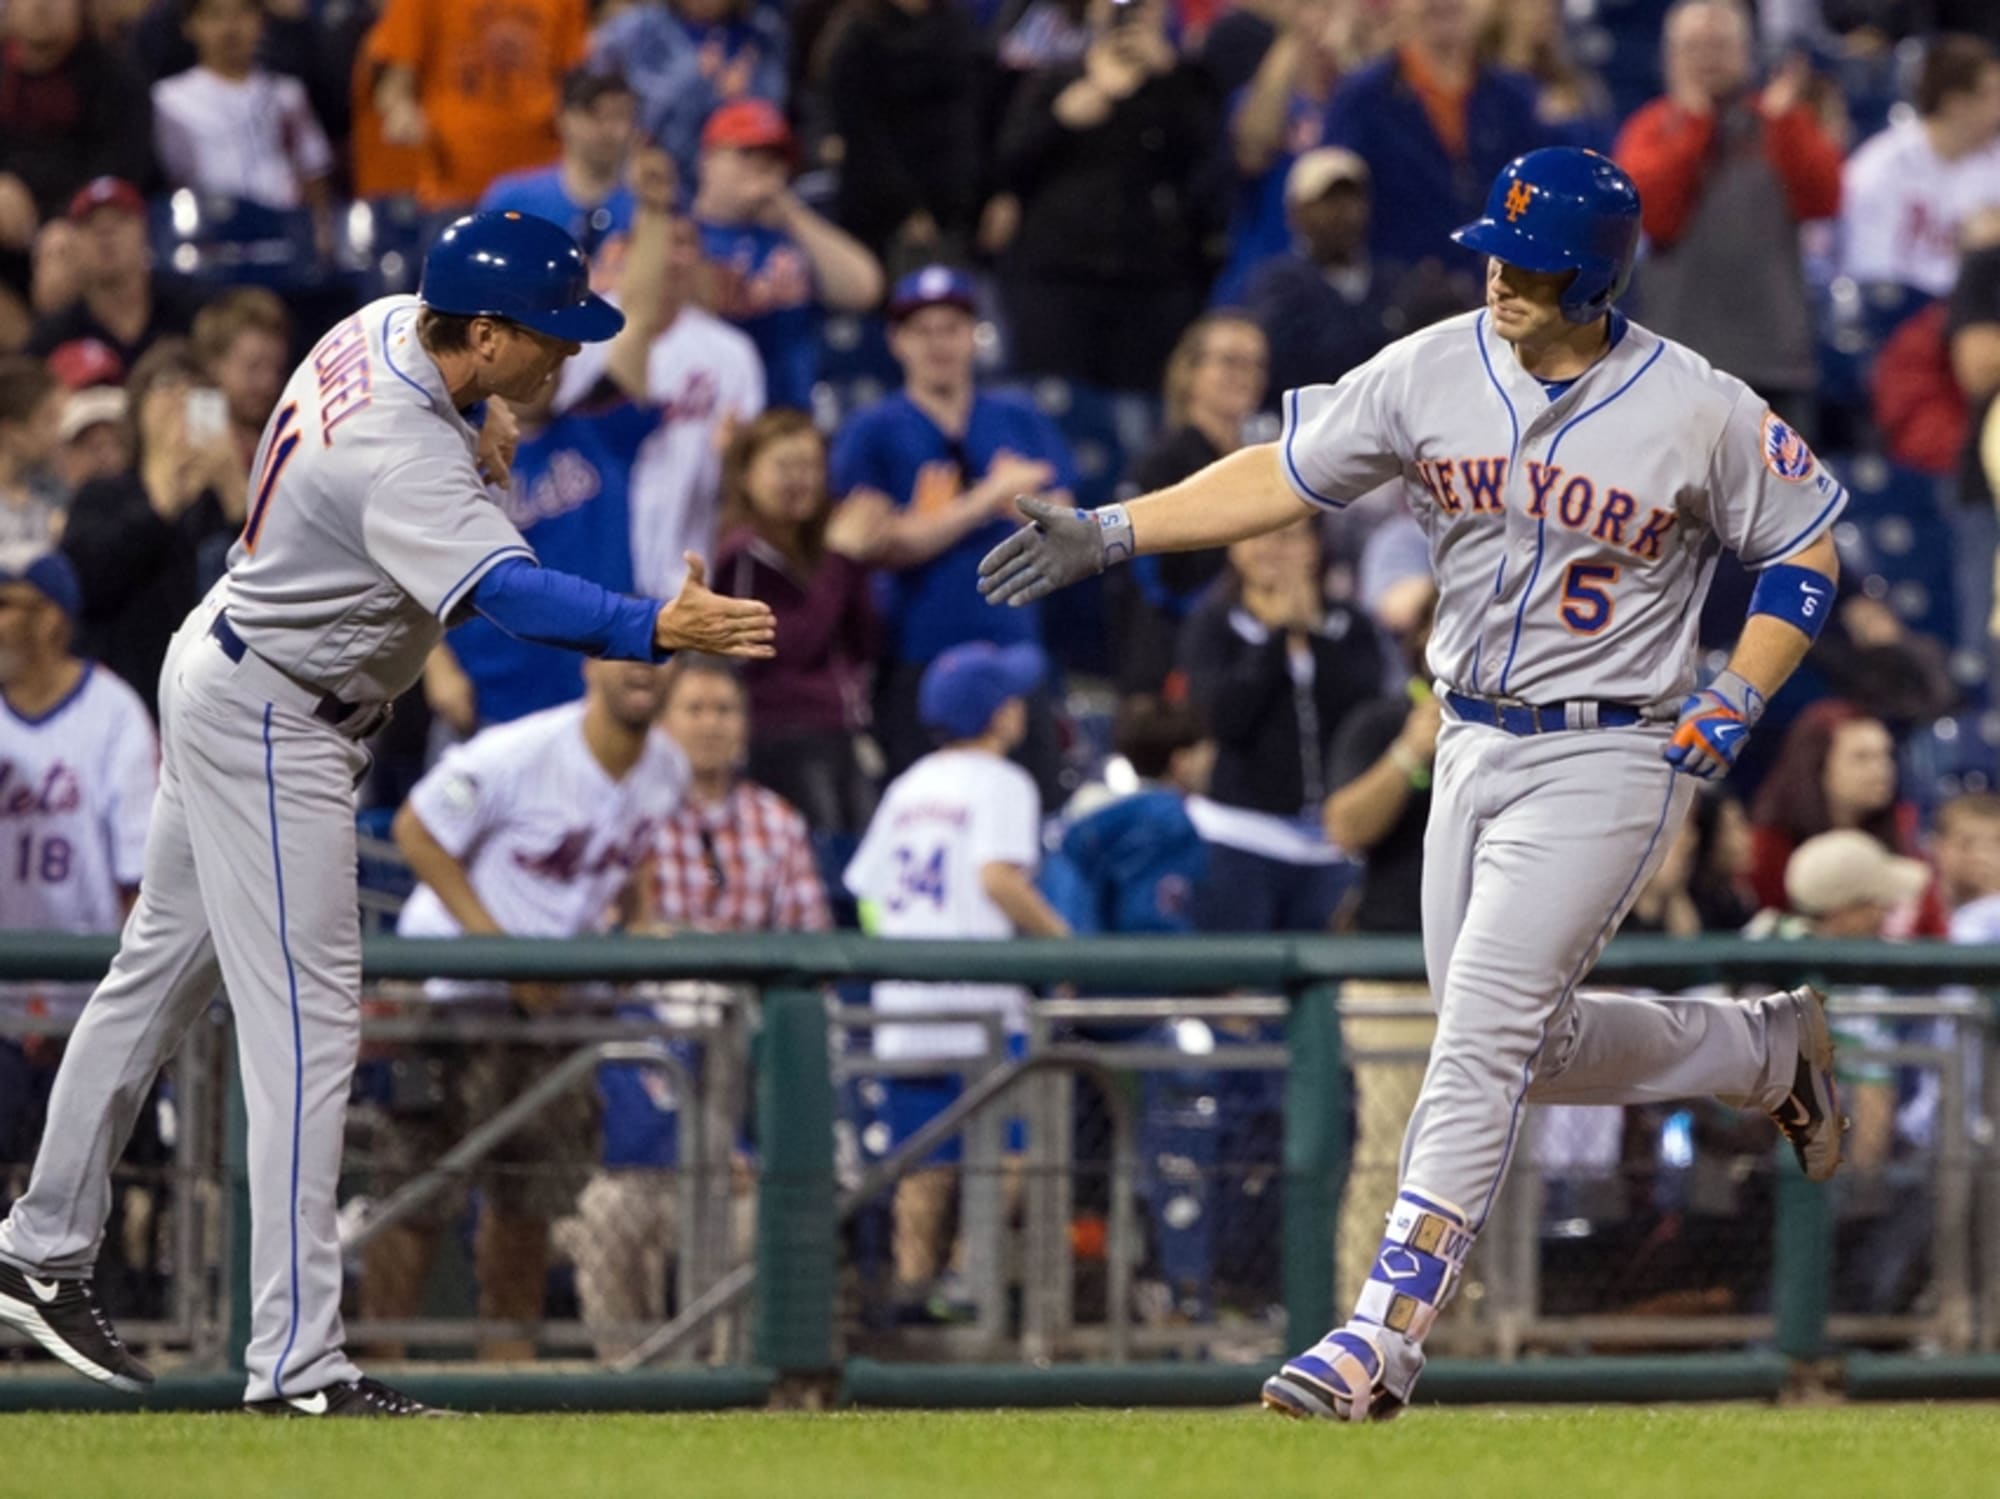 NY Mets: When Captain David Wright hits his last home run